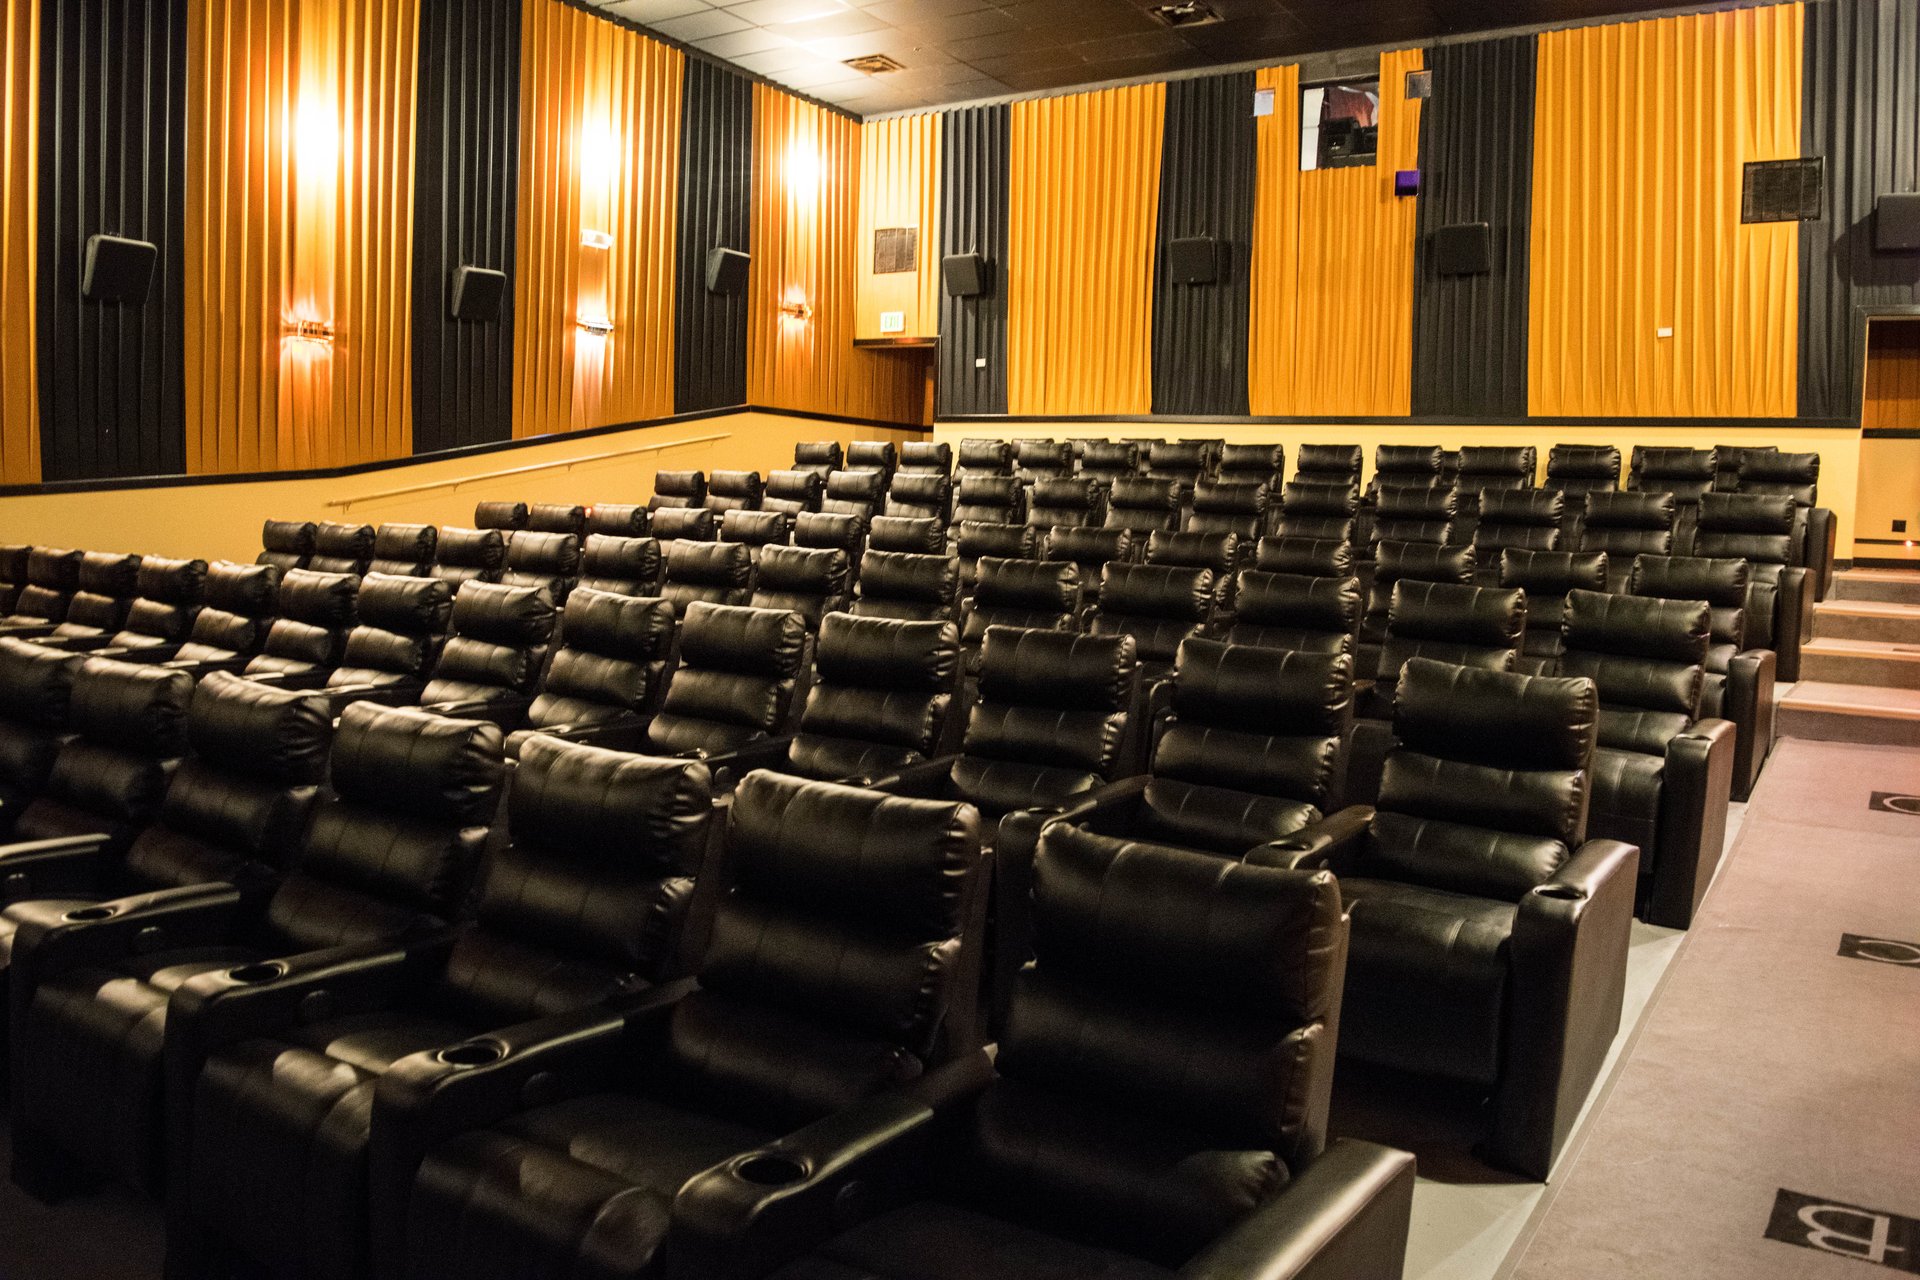 interior of auditorium showing recliners